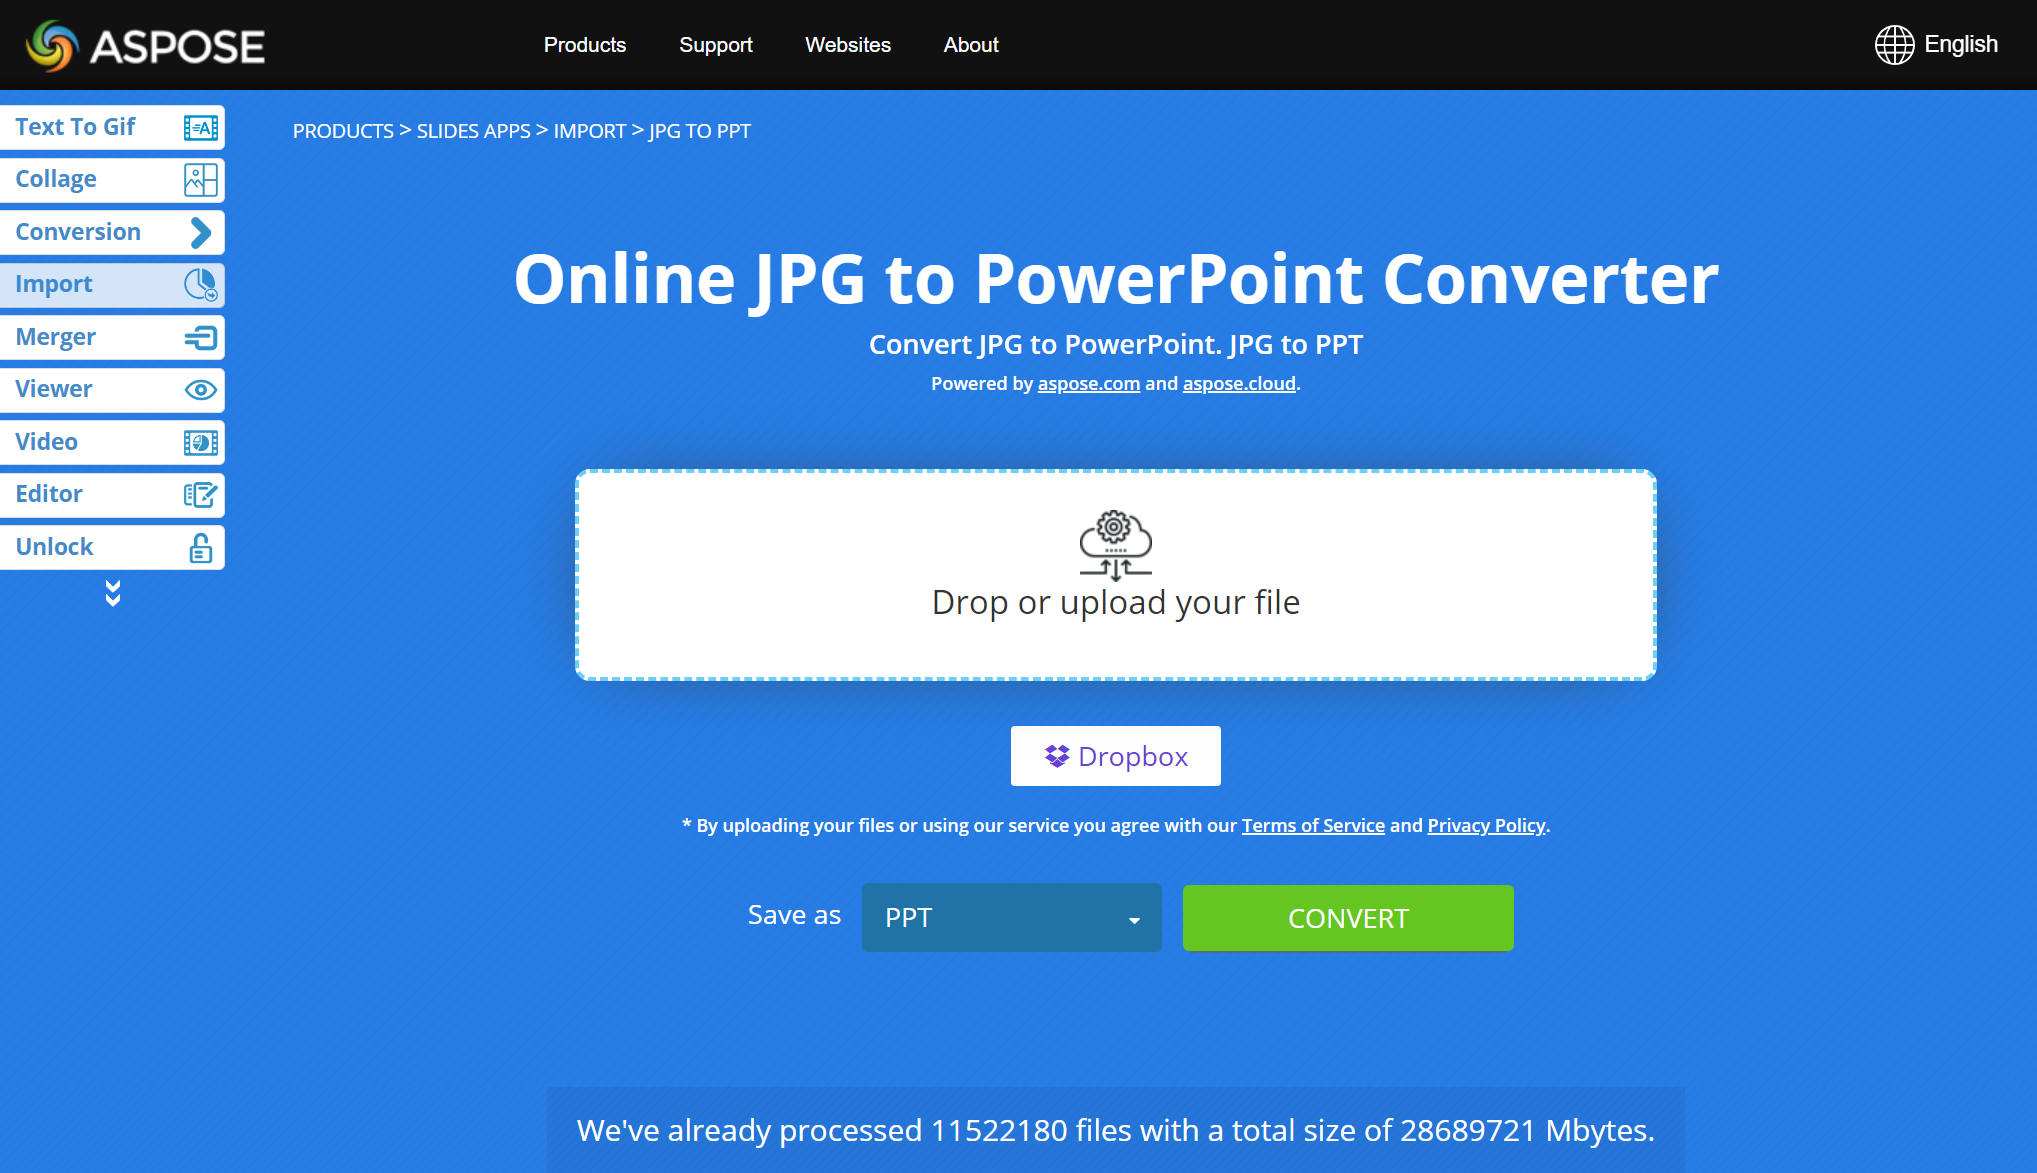 تبدیل JPG آنلاین به PPT را در نظر بگیرید